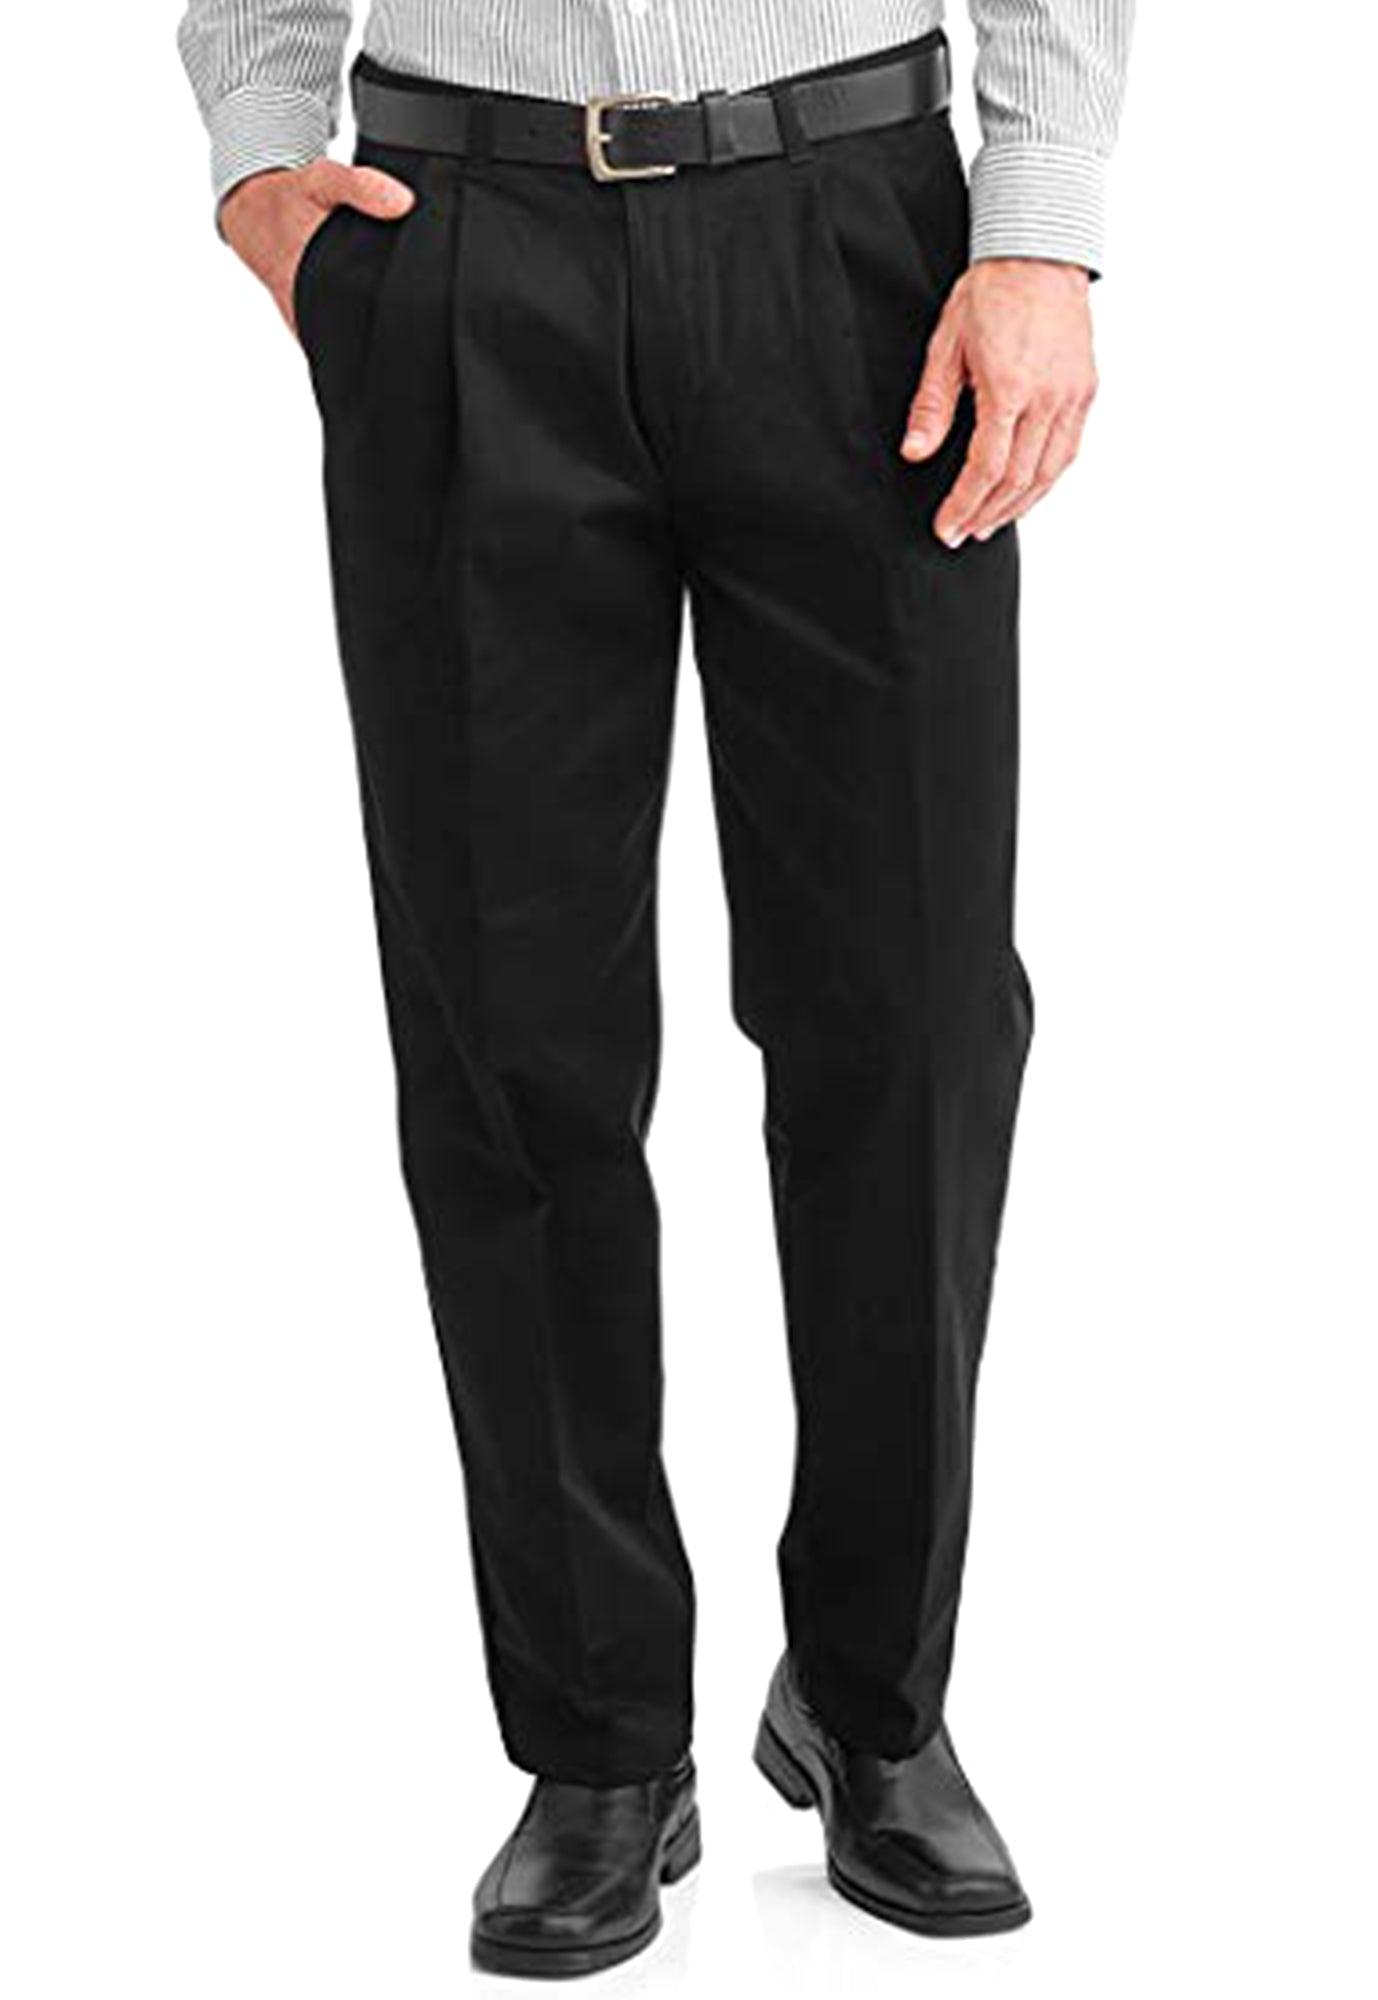 Men's Black Pleated Front Dress Pants - 99tux